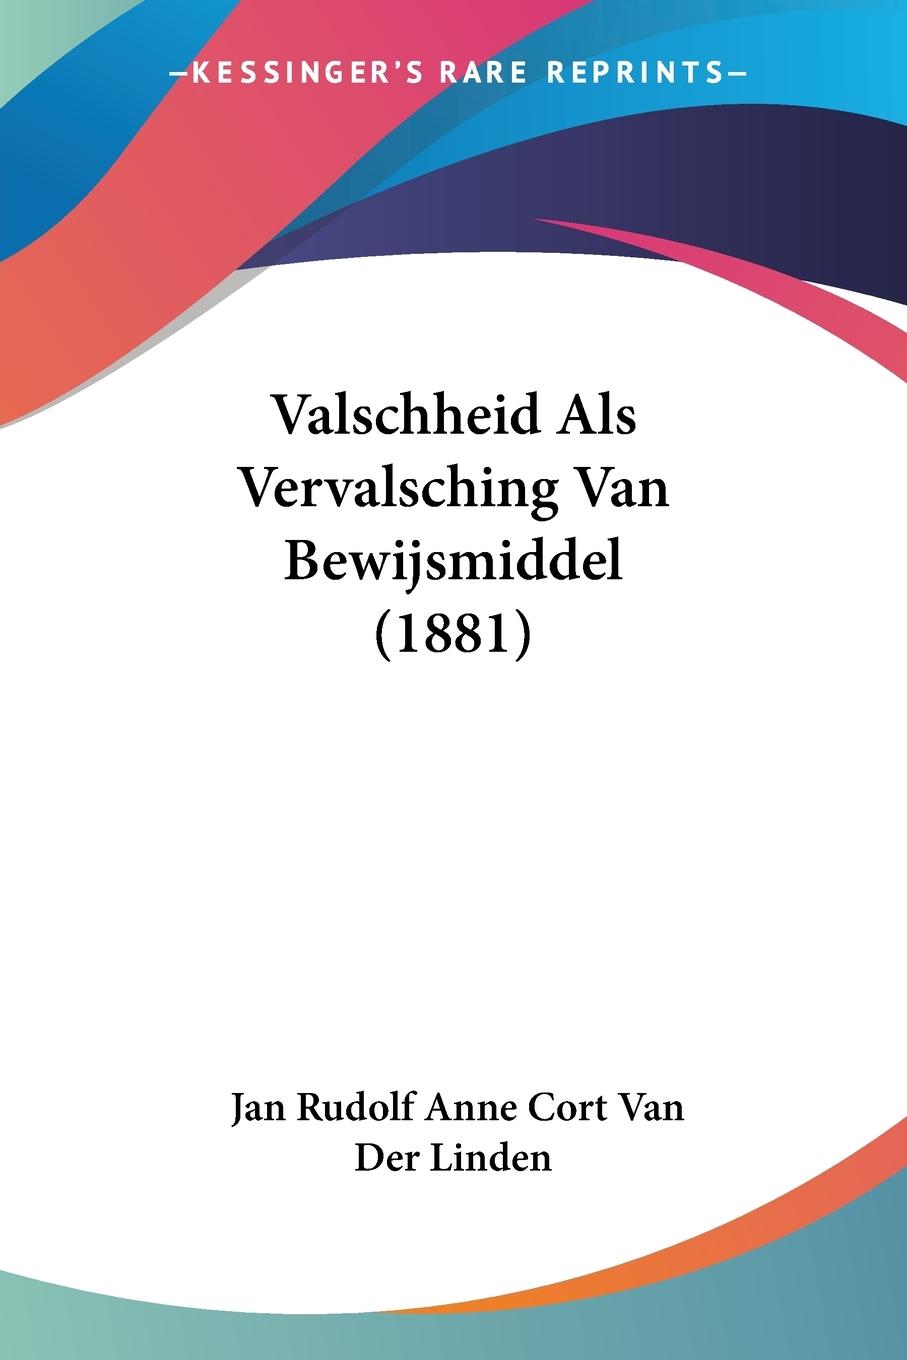 Valschheid Als Vervalsching Van Bewijsmiddel (1881) - Linden, Jan Rudolf Anne Cort Van Der